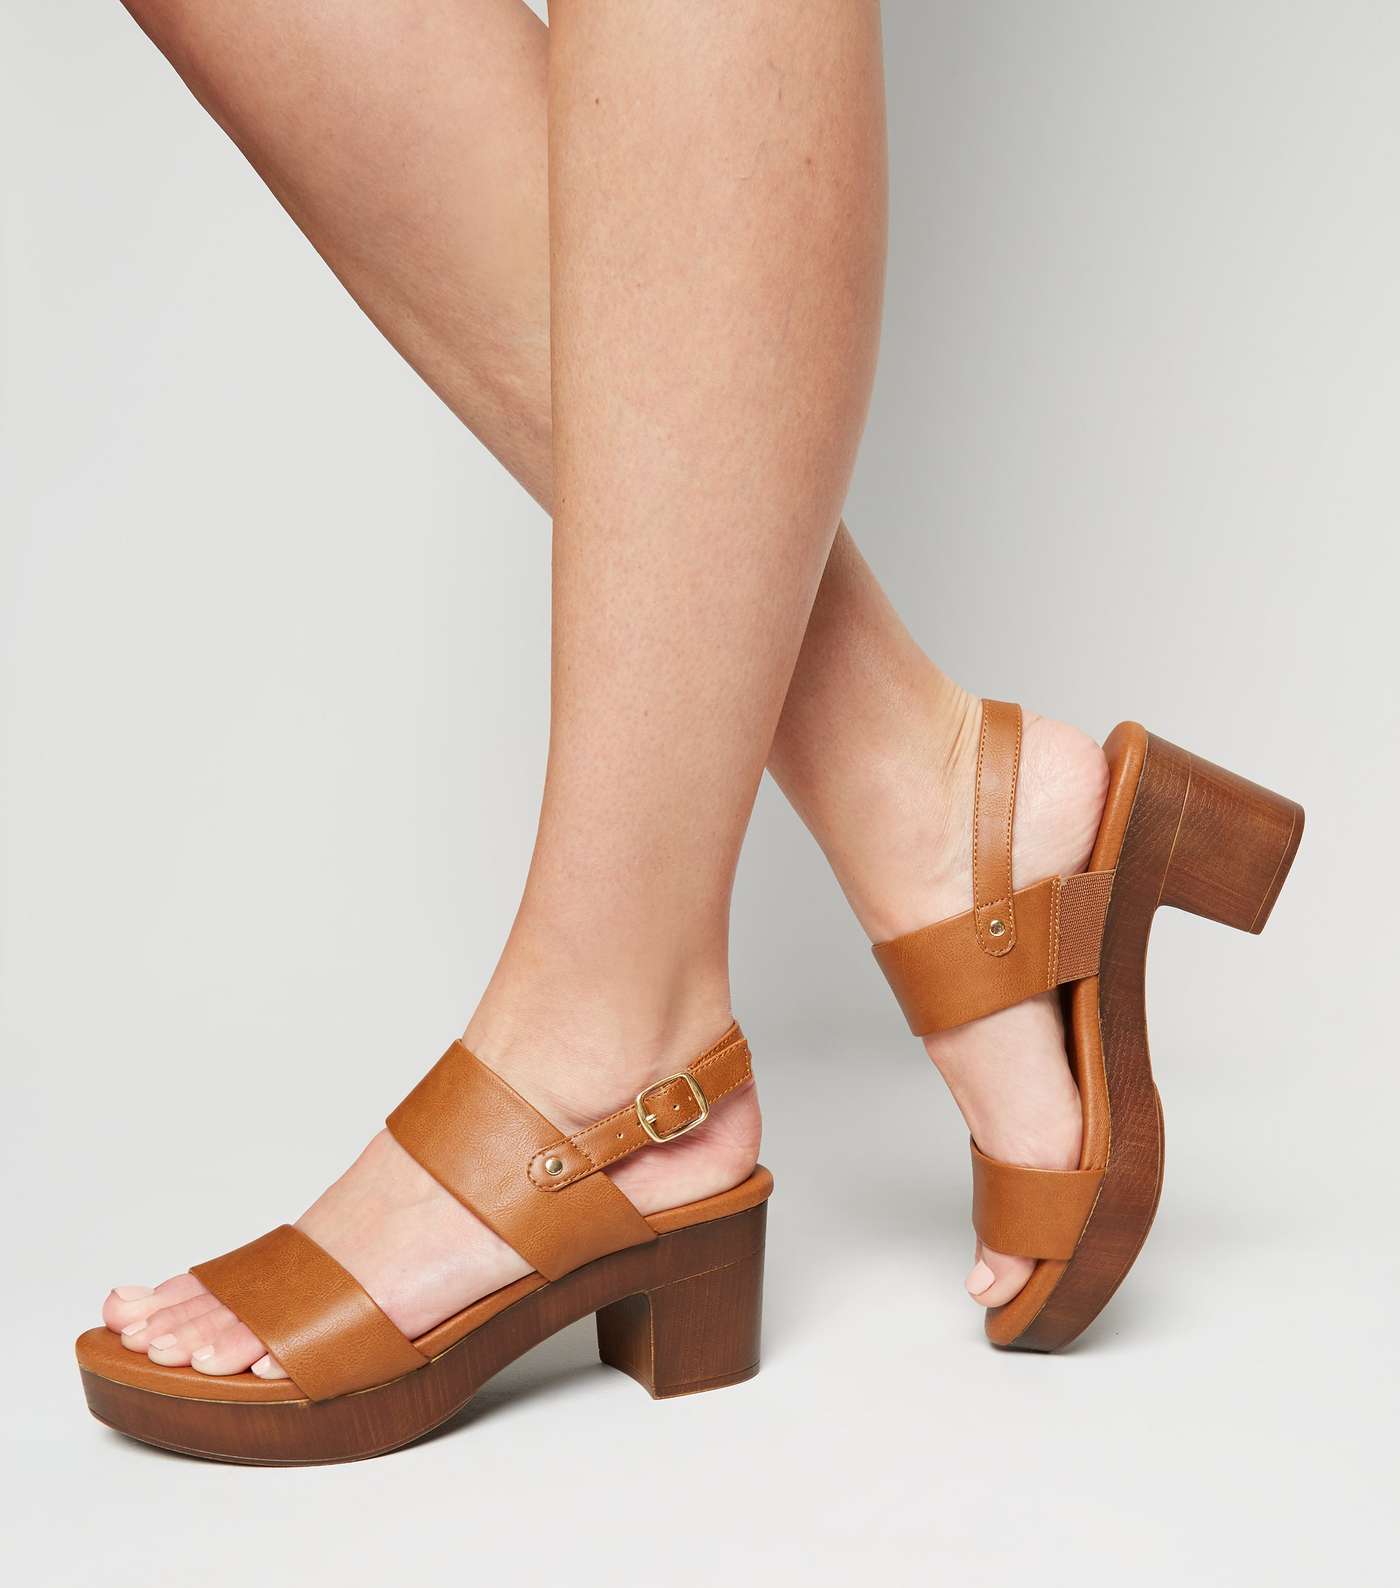 Tan Leather-Look Wood Platform Block Heels Image 2